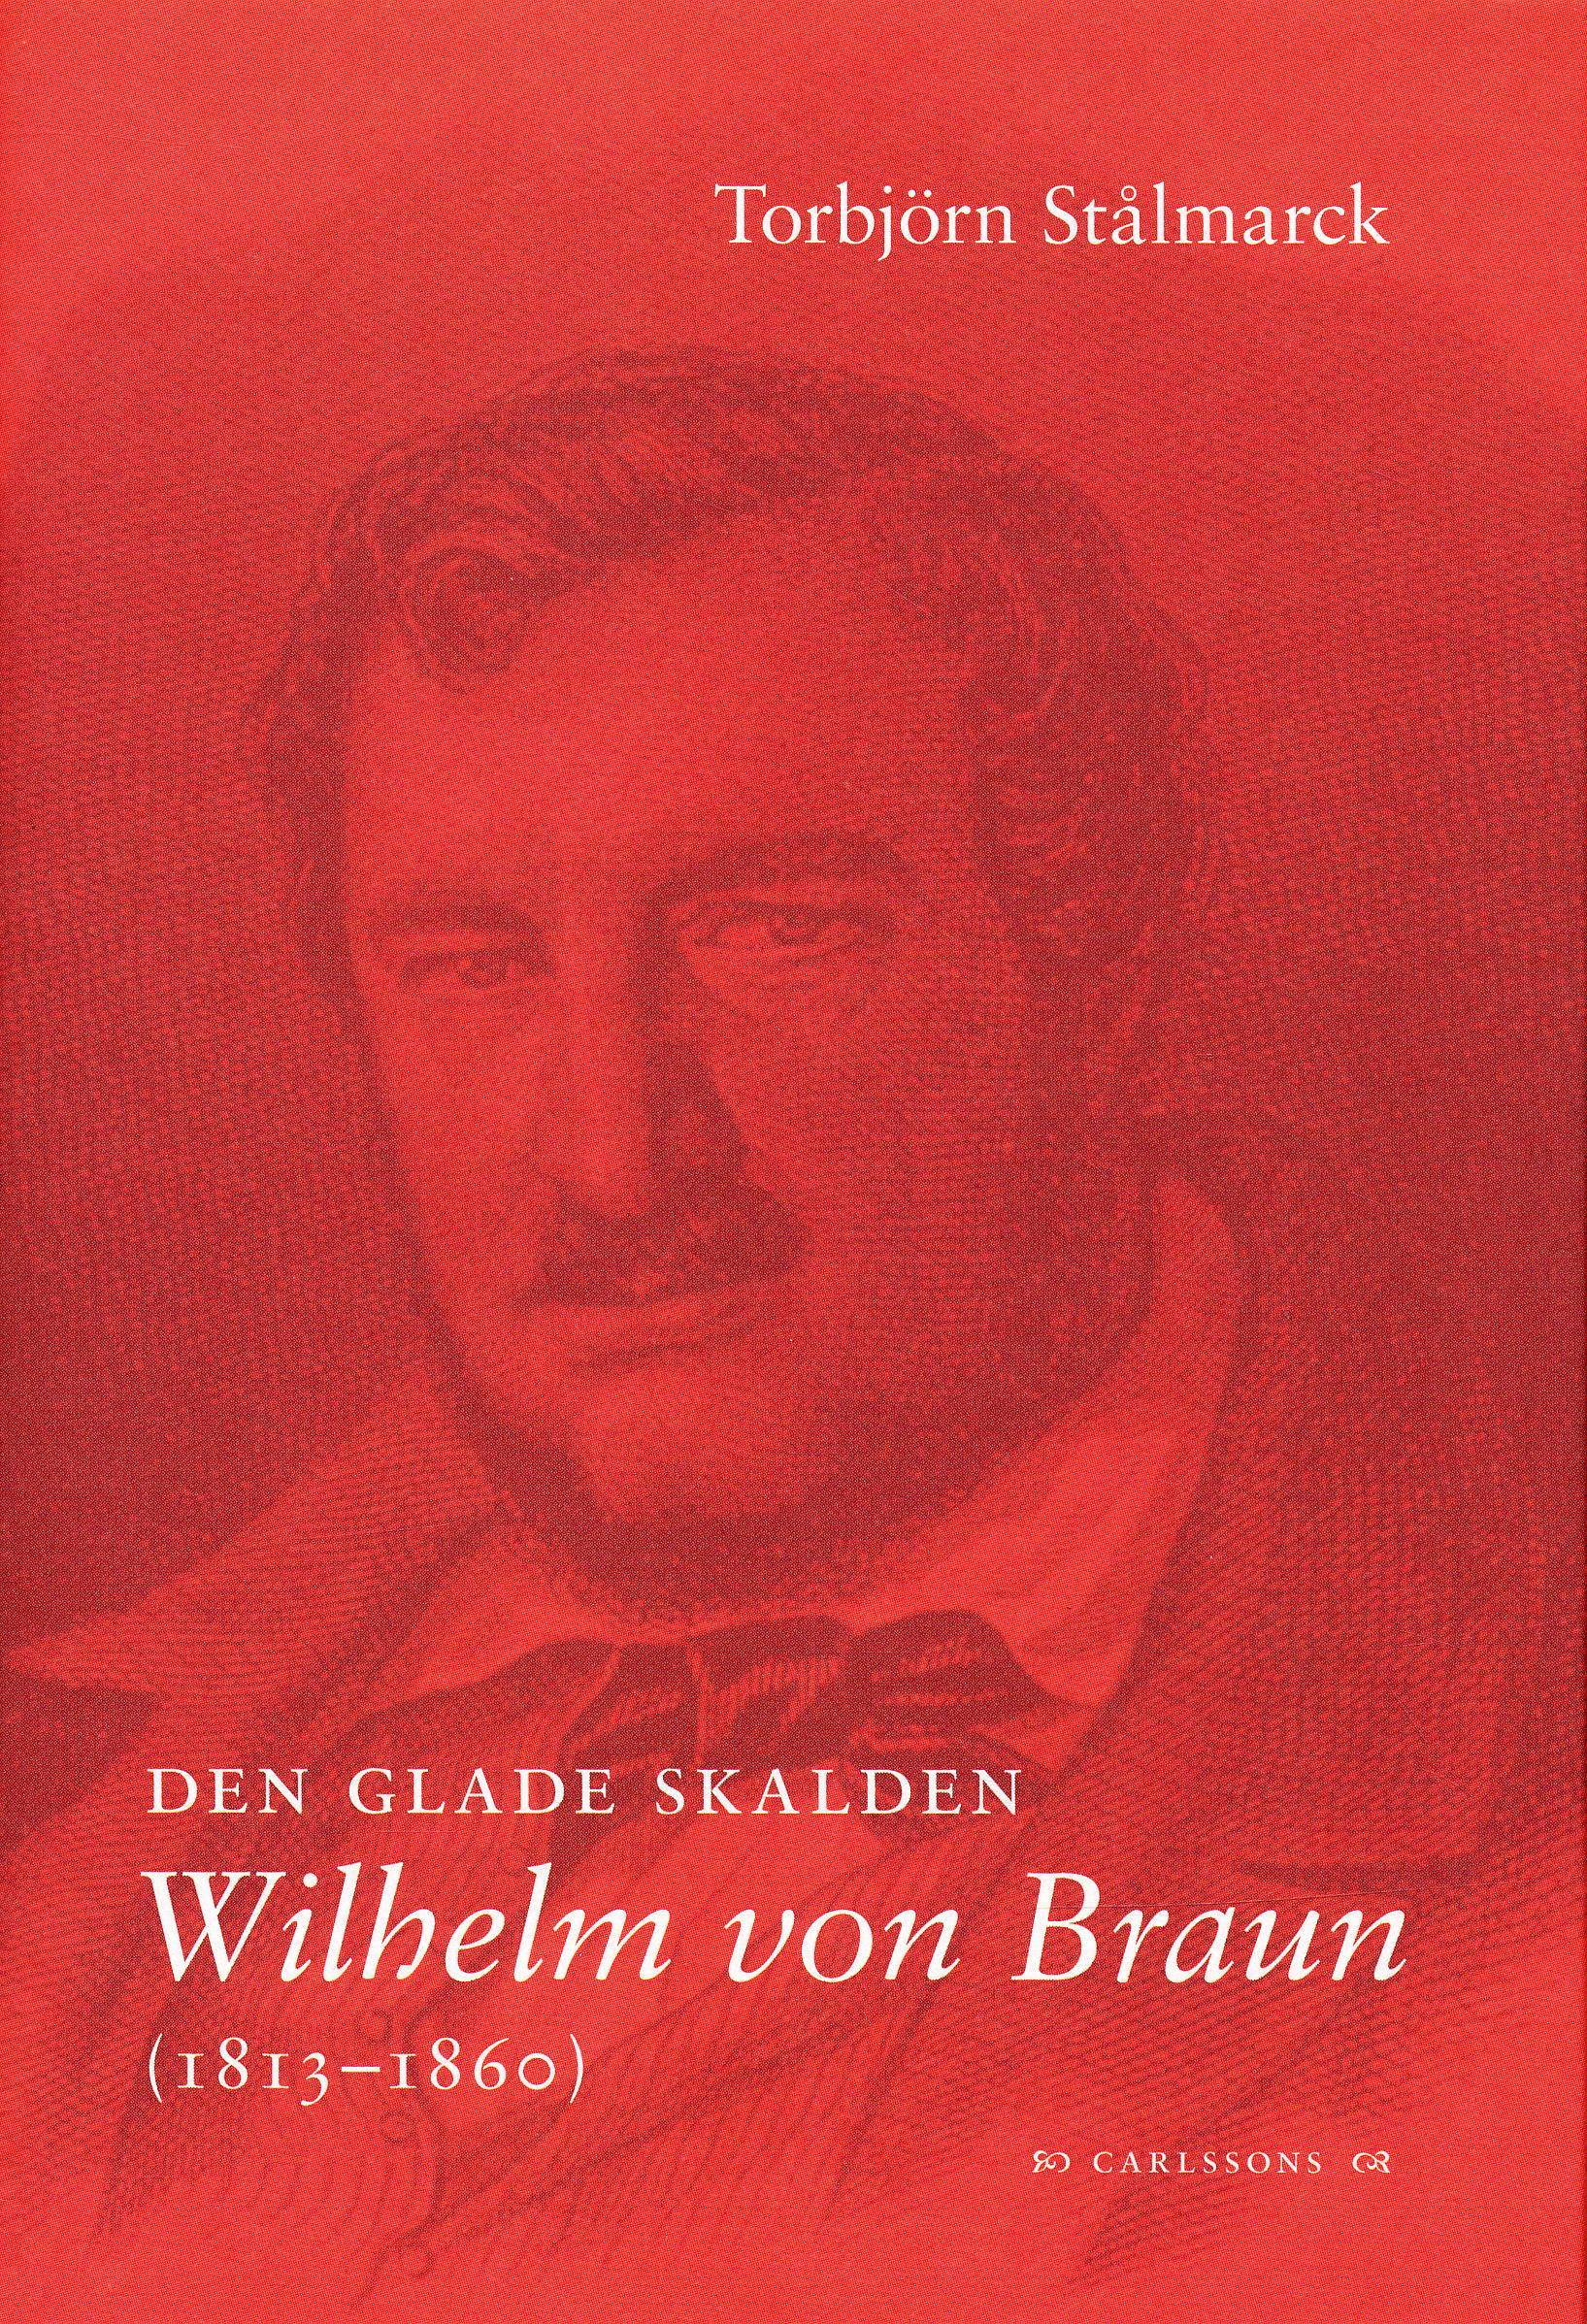 Den glade skalden Wilhelm von Braun (1813-1860)